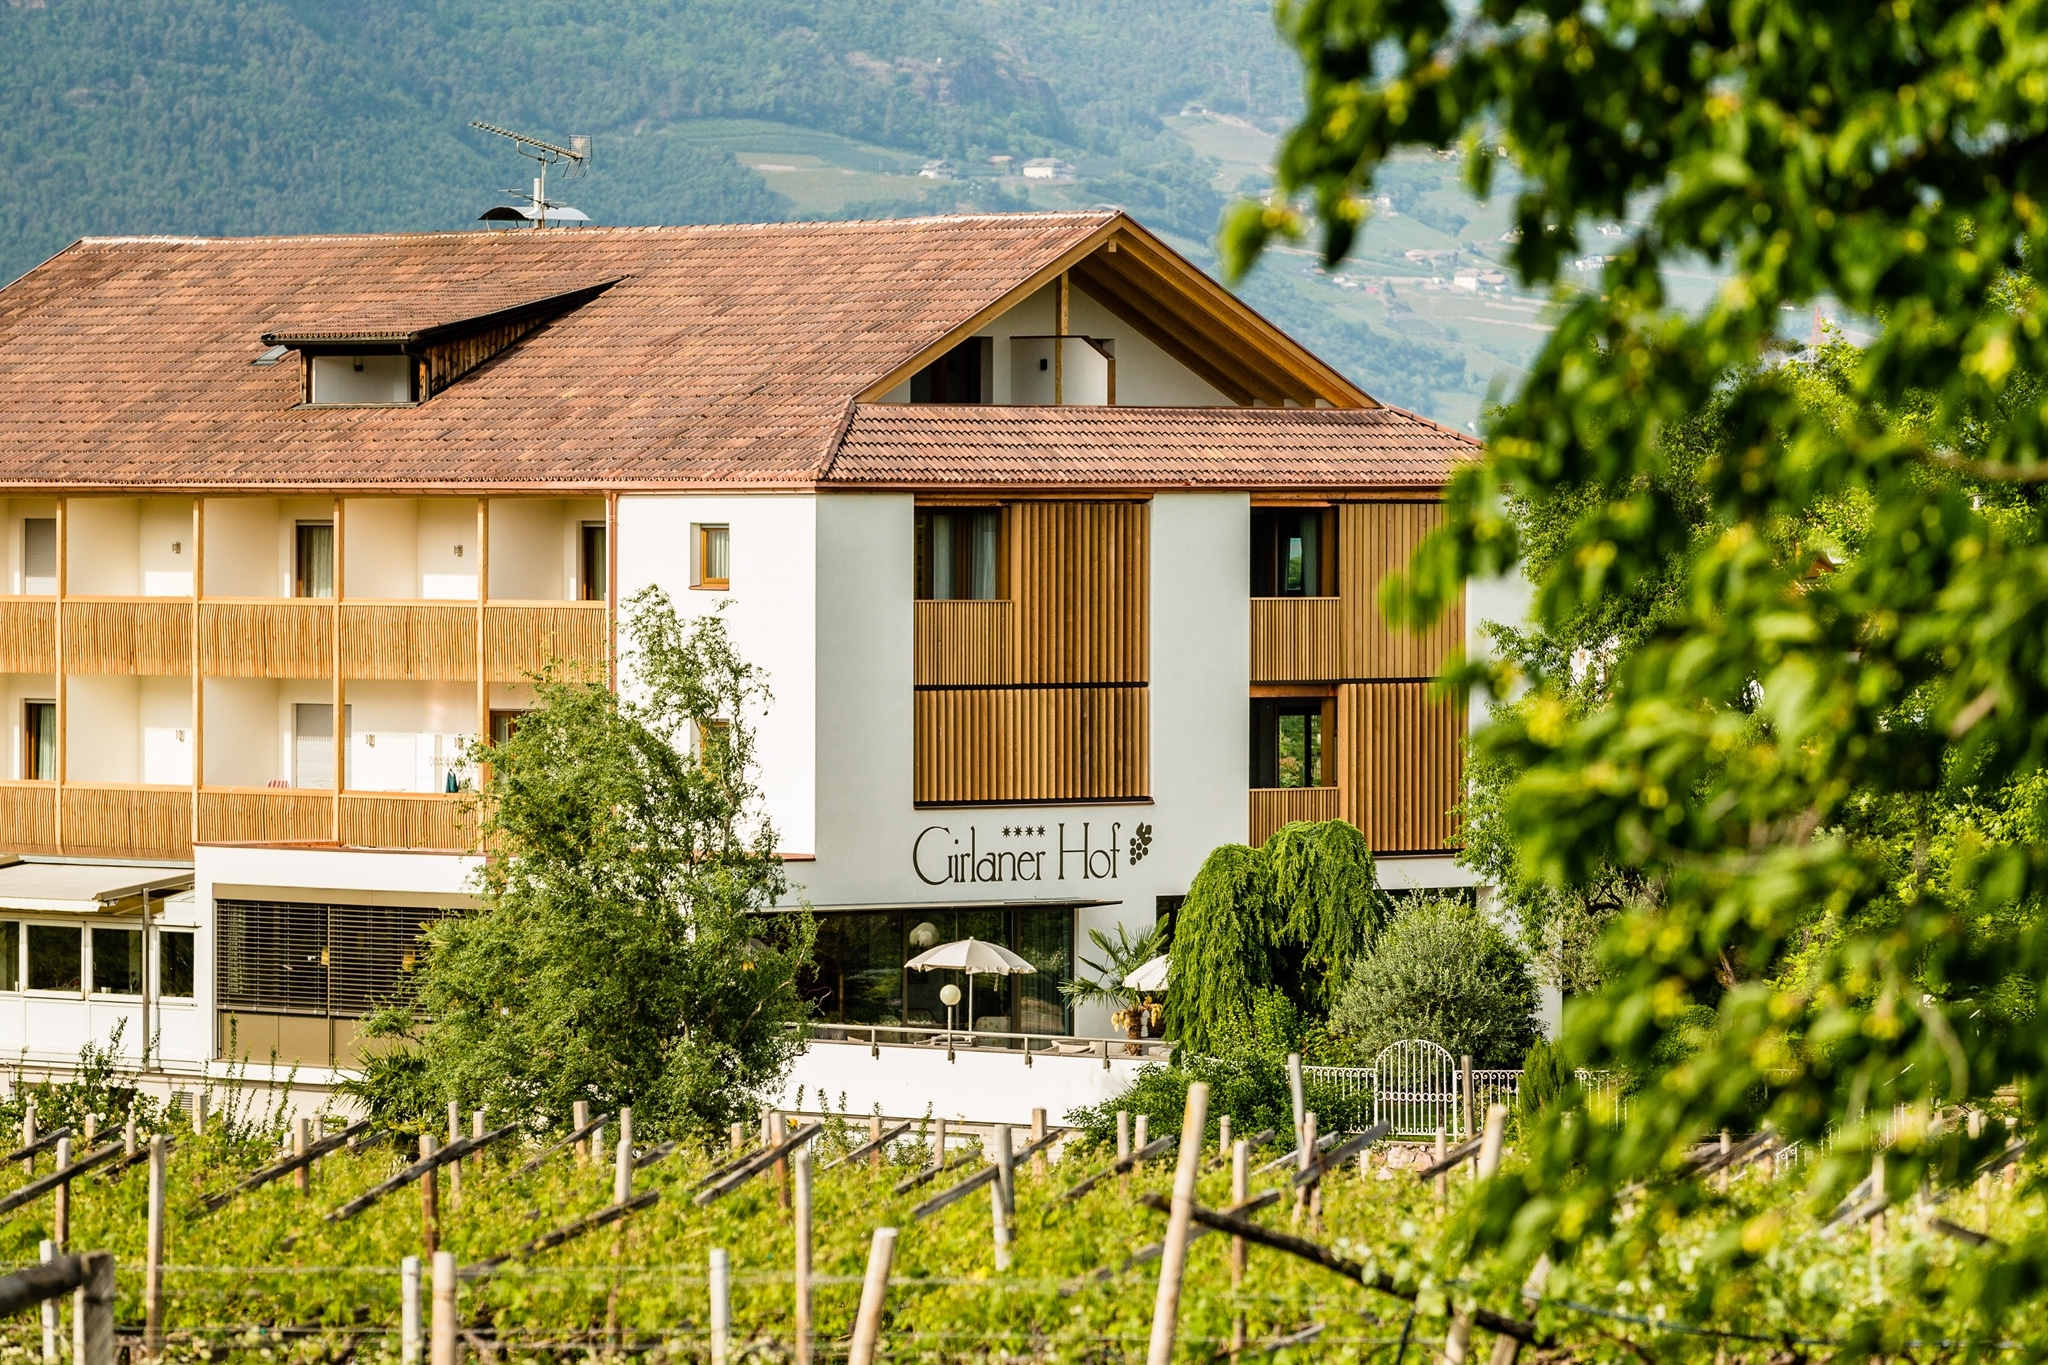 Hotel Girlanerhof - Girlan in Southern South Tyrol